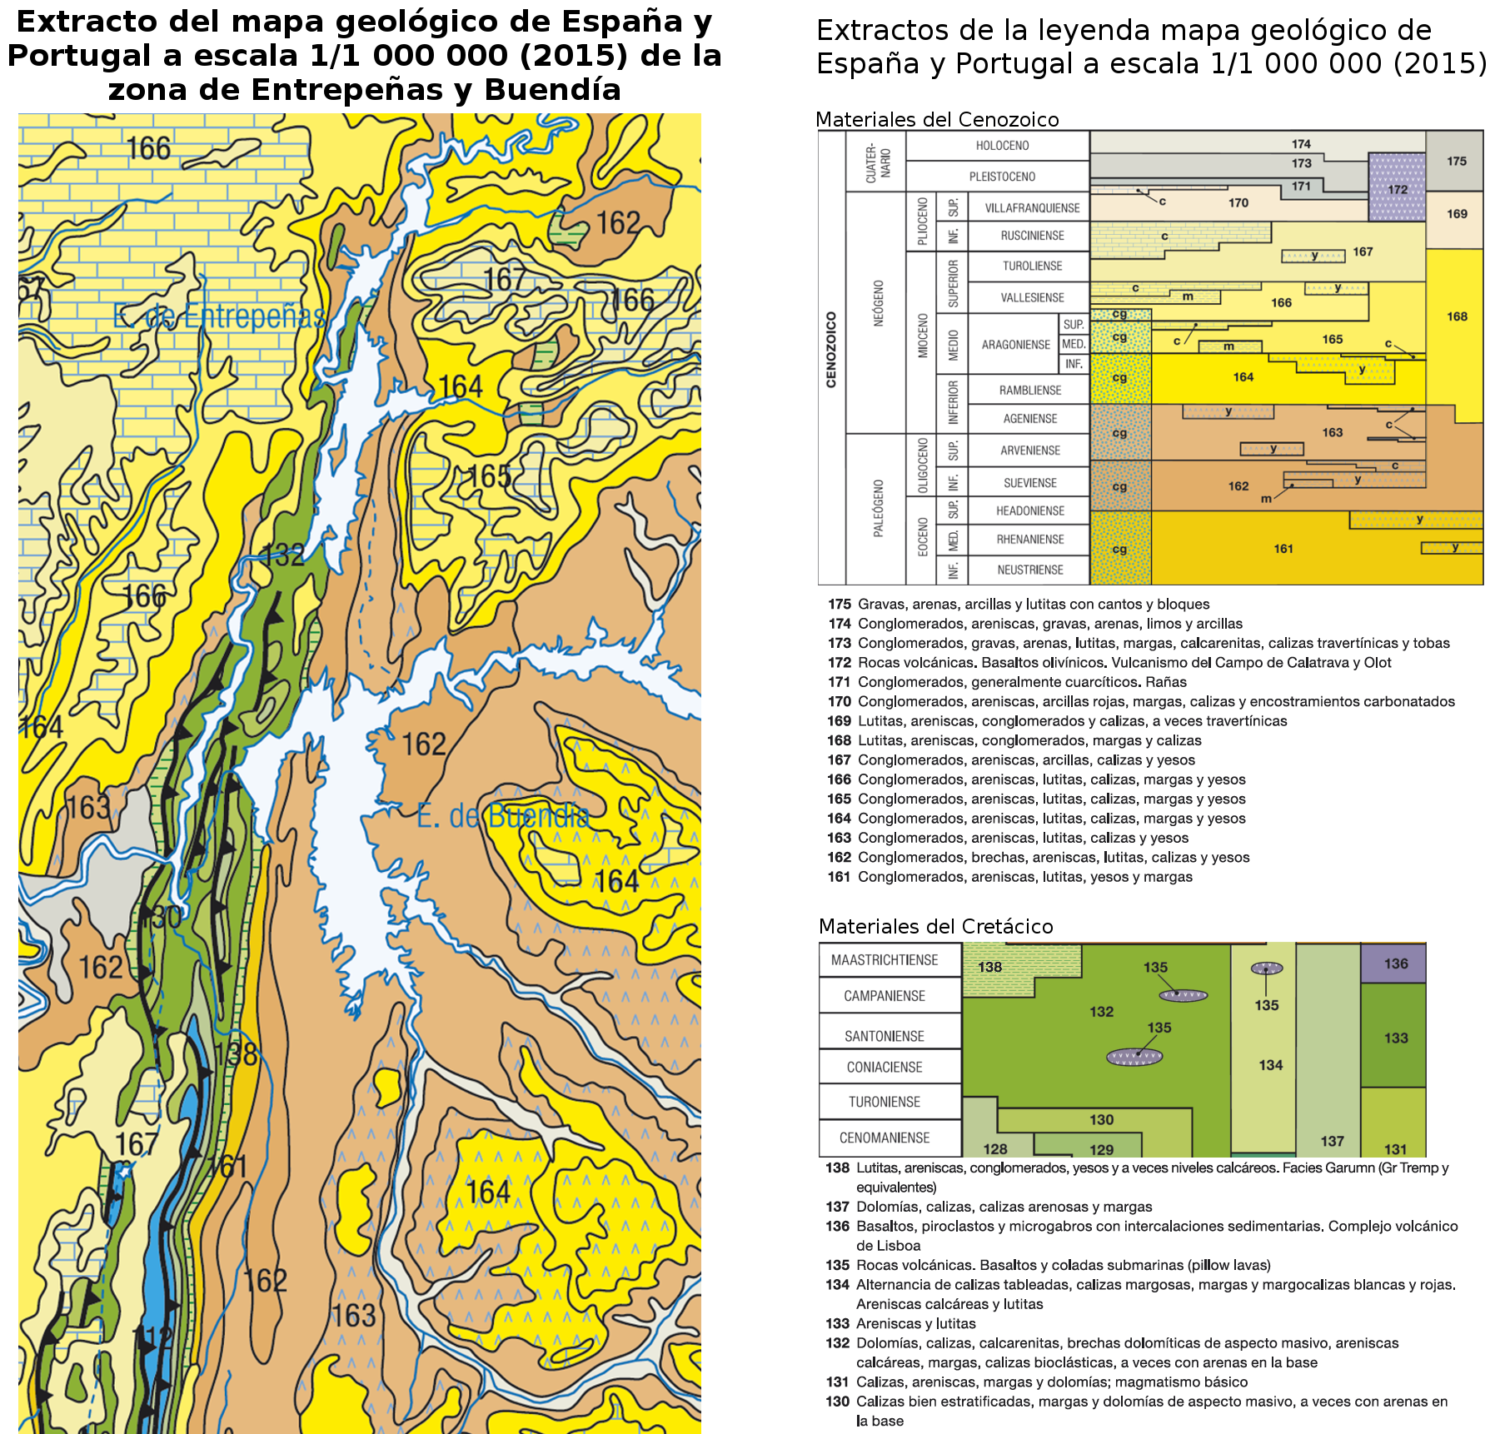 Extracto del mapa geológico de España y Portugal a escala 1/1 000 000 (IGME, 2015) de la zona de Entrepeñas y Buendía